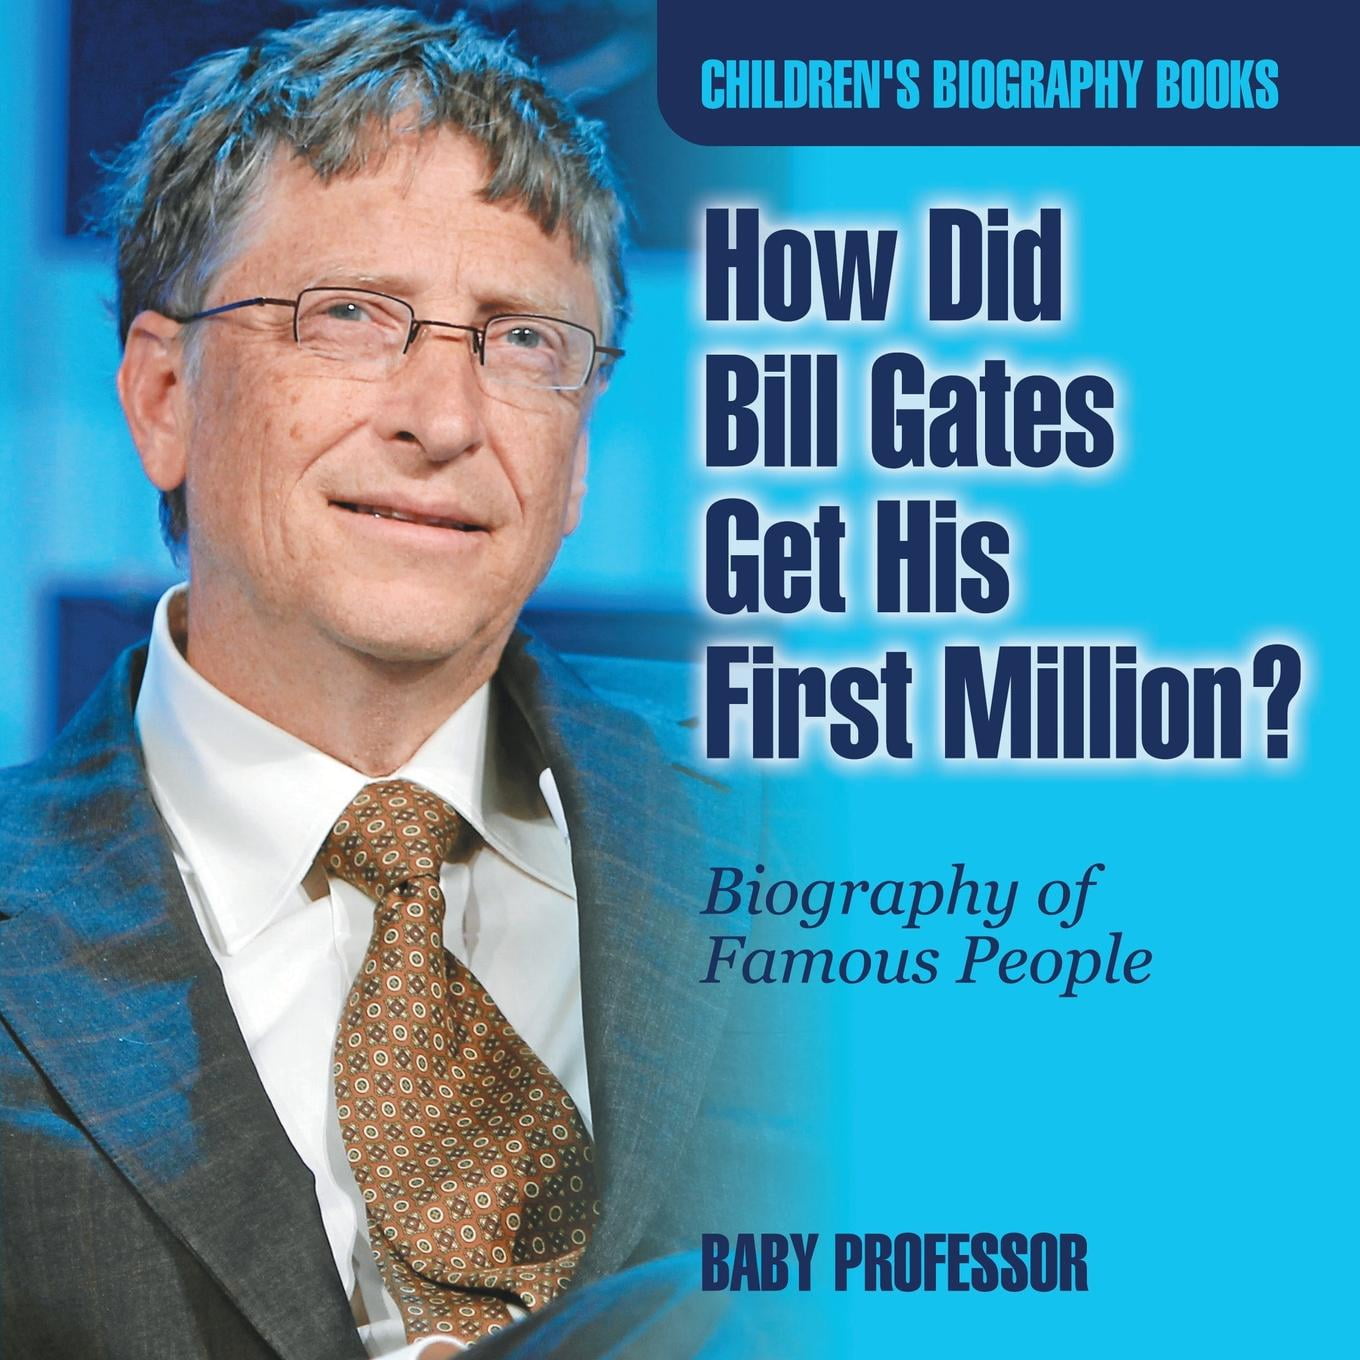 bill gates biography pdf free download